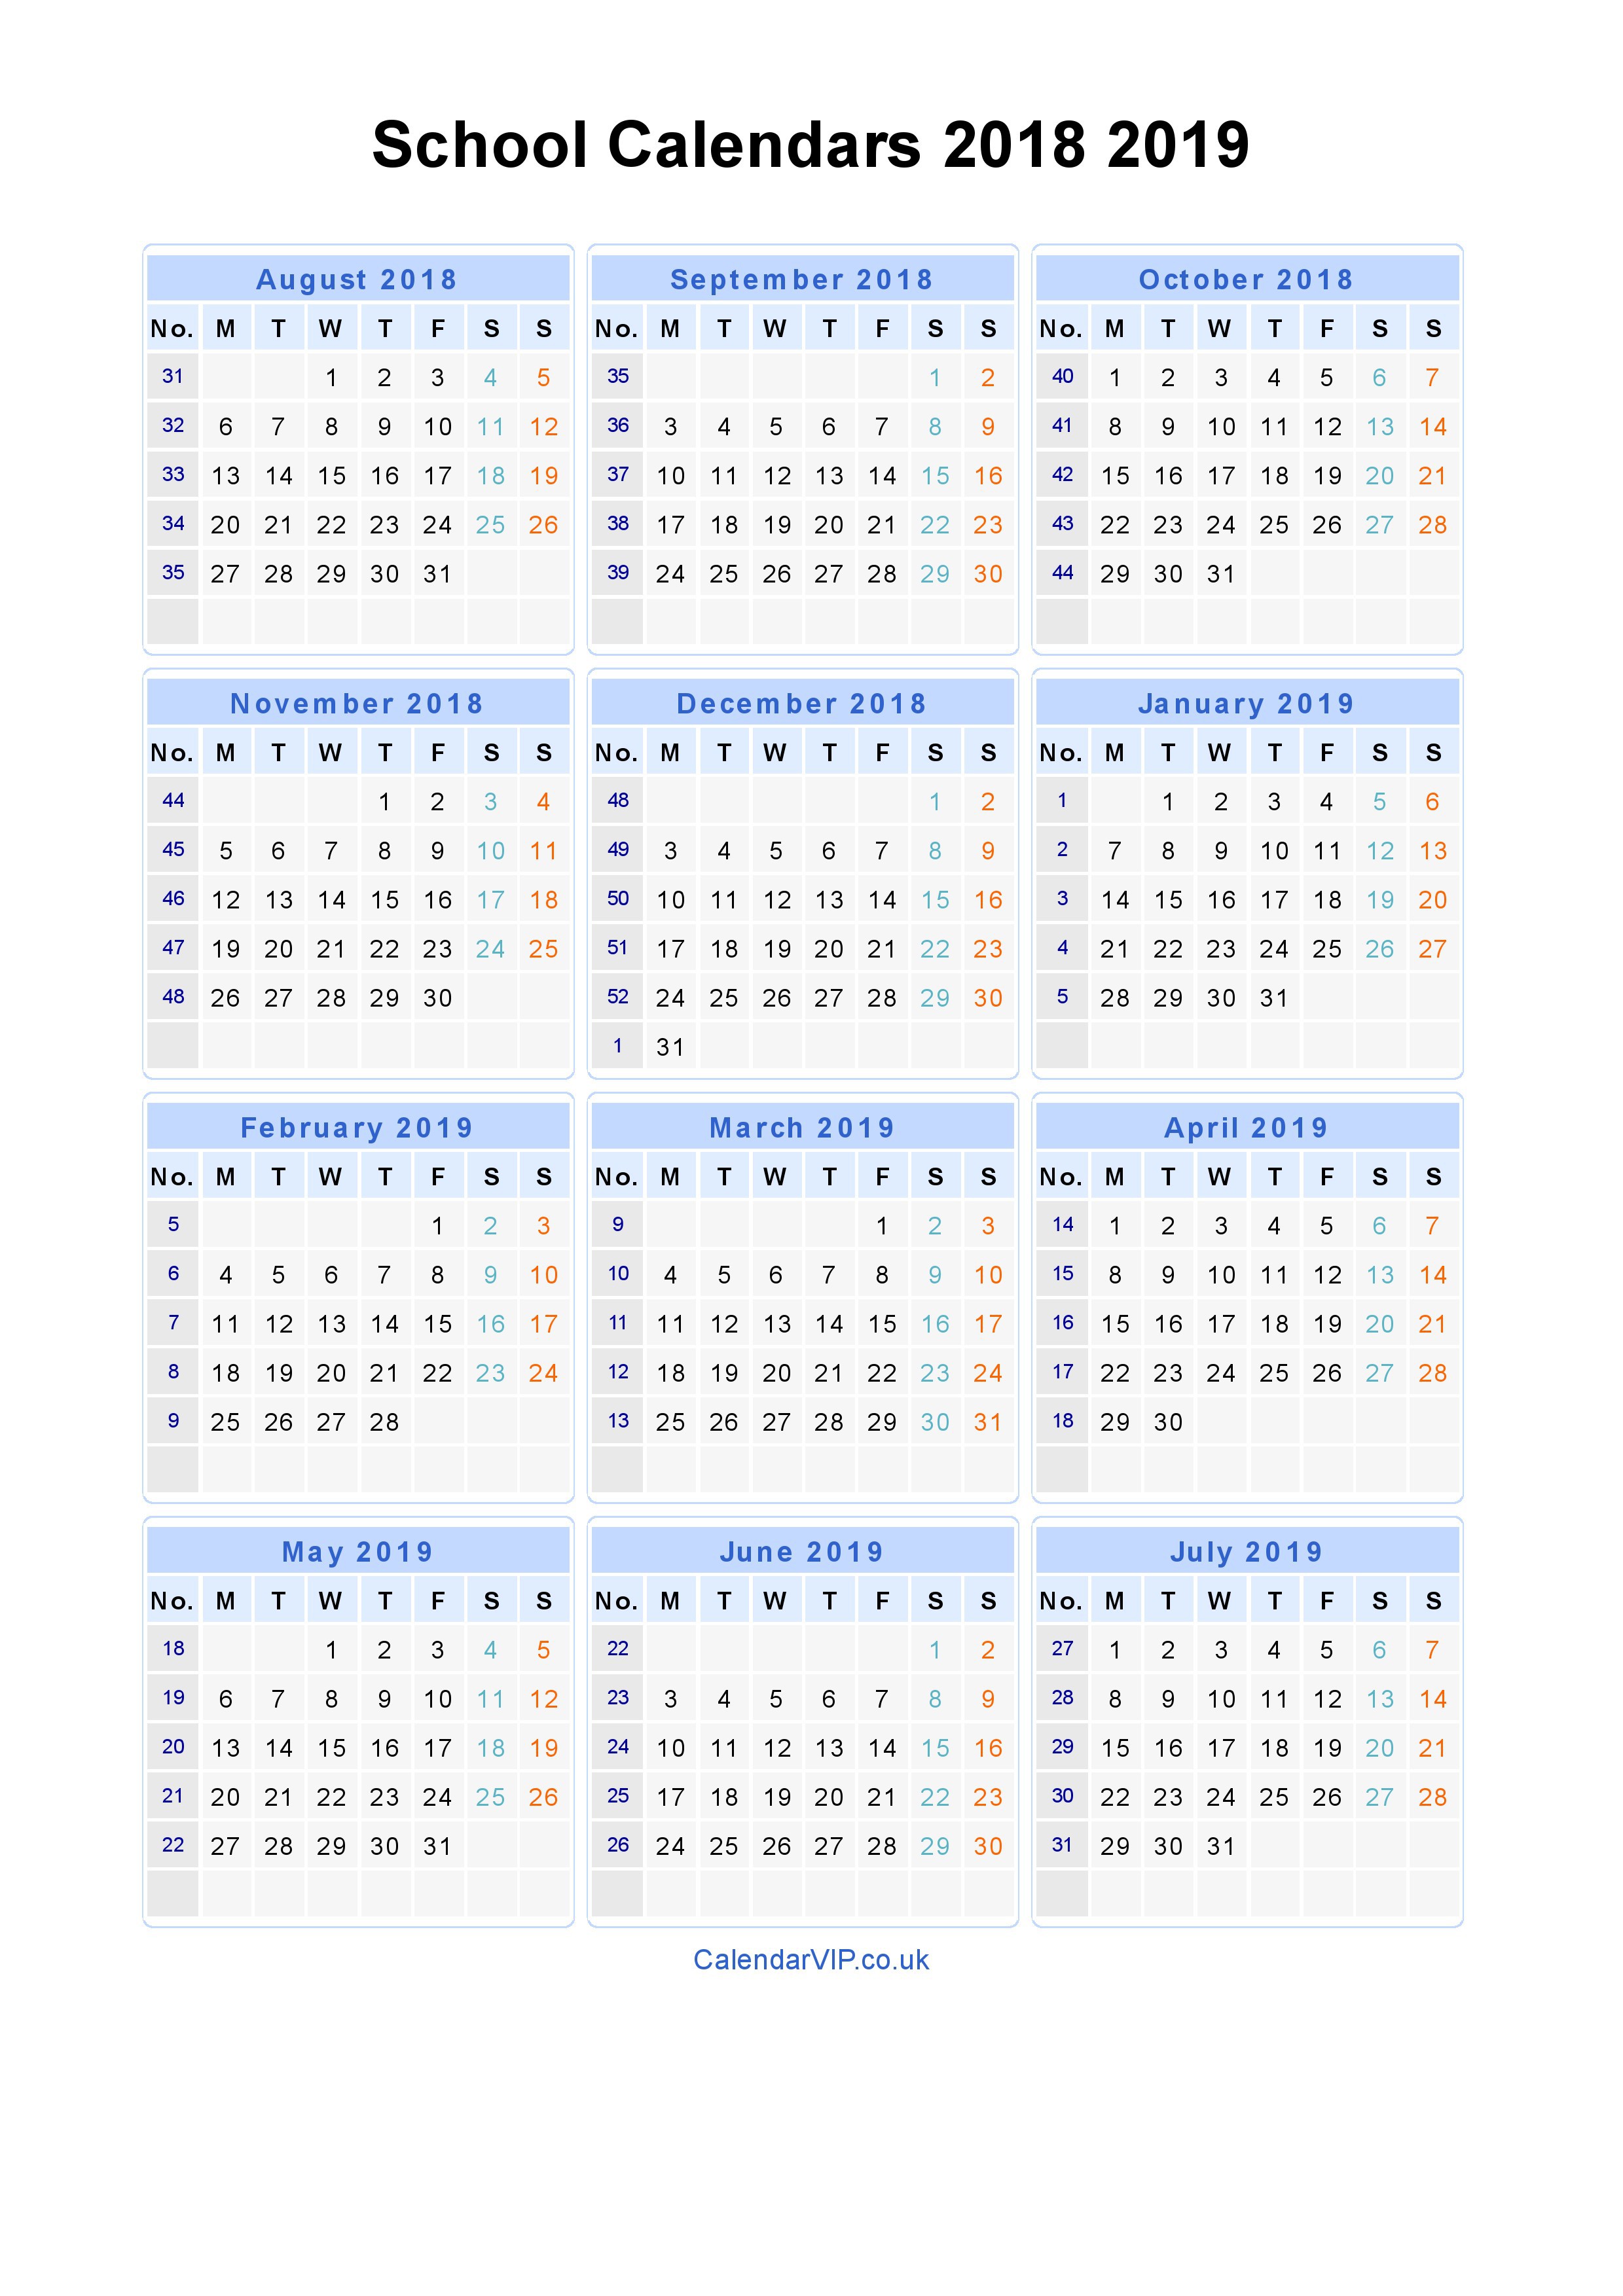 school calendars 2018 2019 calendar from august 2018 to